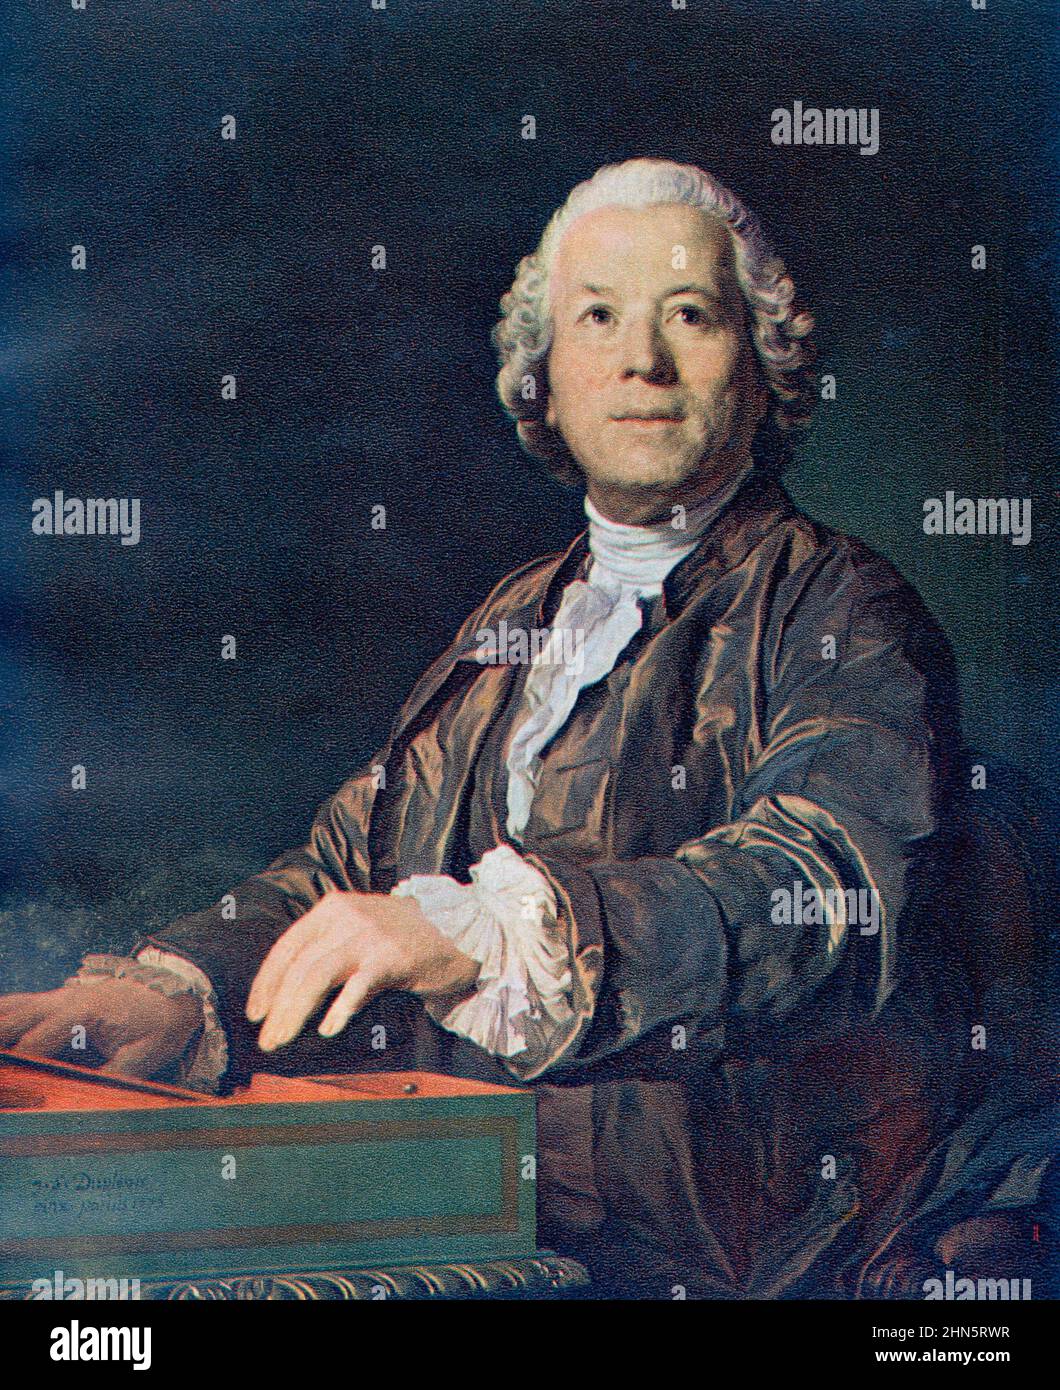 Christoph Willibald (Ritter von) Gluck , 1714 – 1787. Komponist der italienischen und französischen Oper in der frühen Klassik. Aus dem Goldenen Zeitalter von Wien, erschienen 1948. Stockfoto